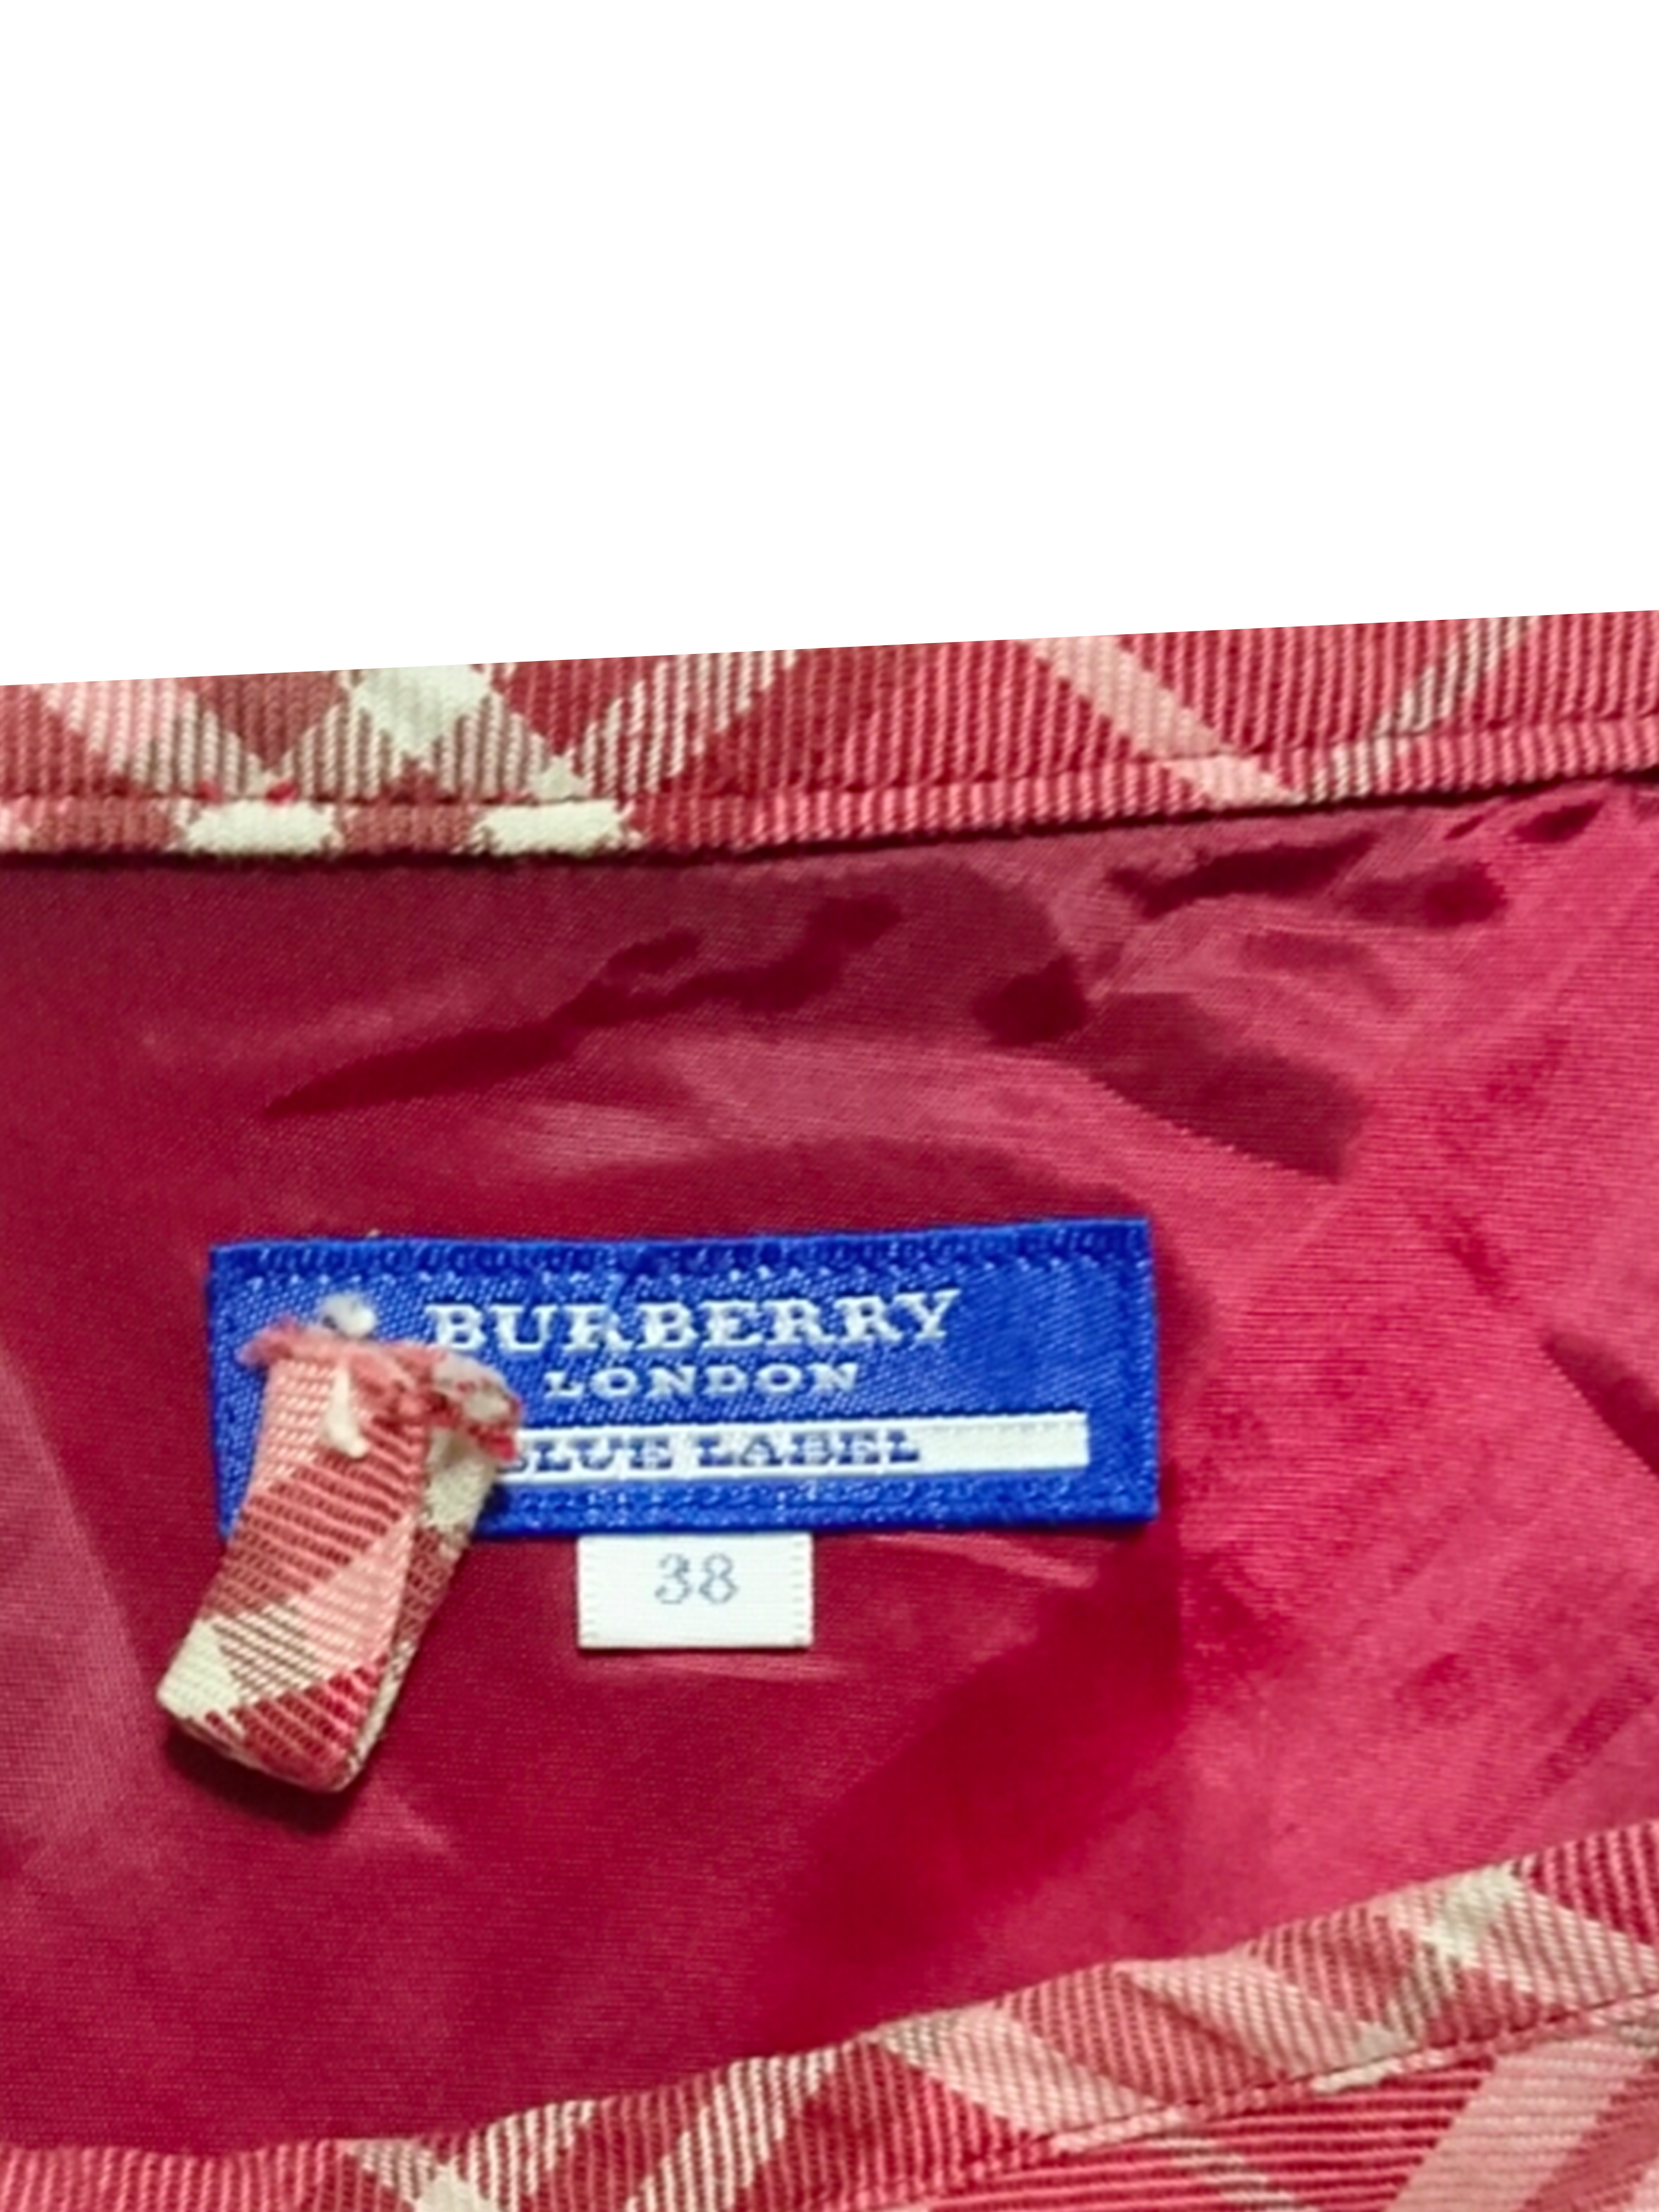 Burberry London Blue Label Bubble Dress